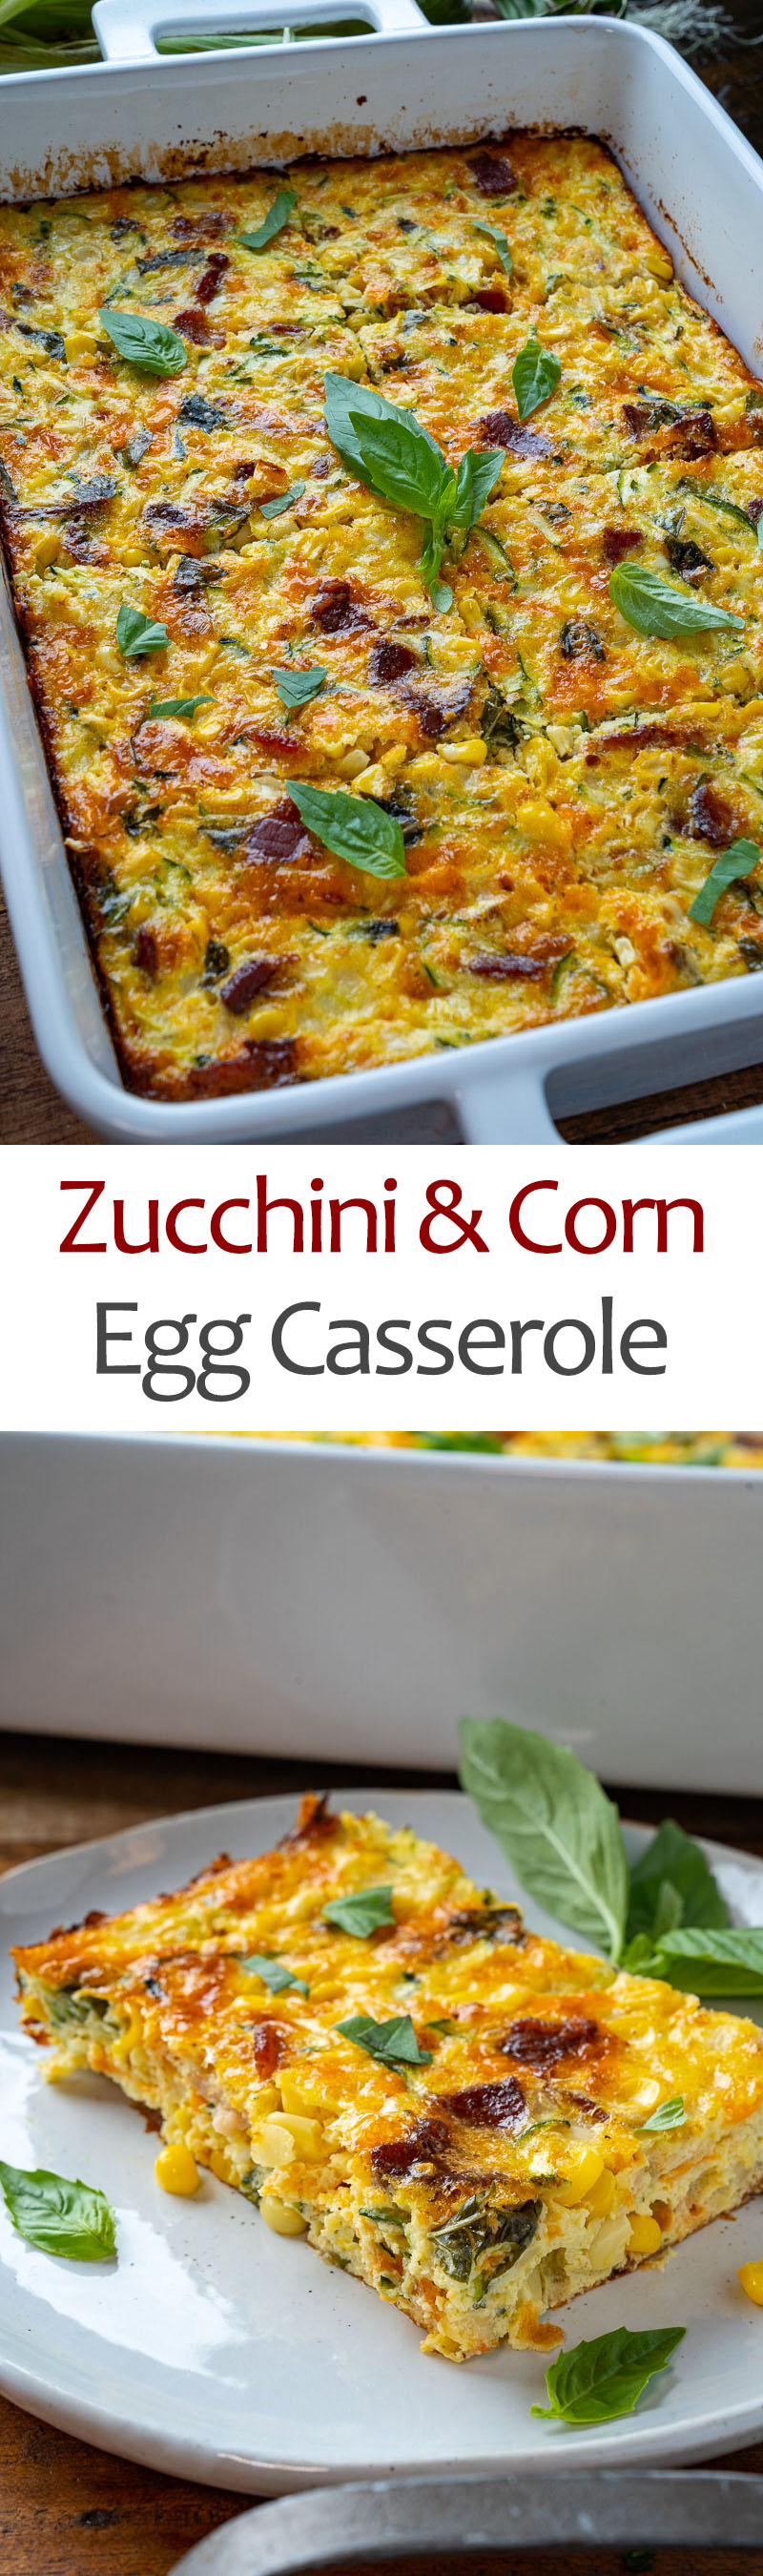 Zucchini and Corn Egg Casserole